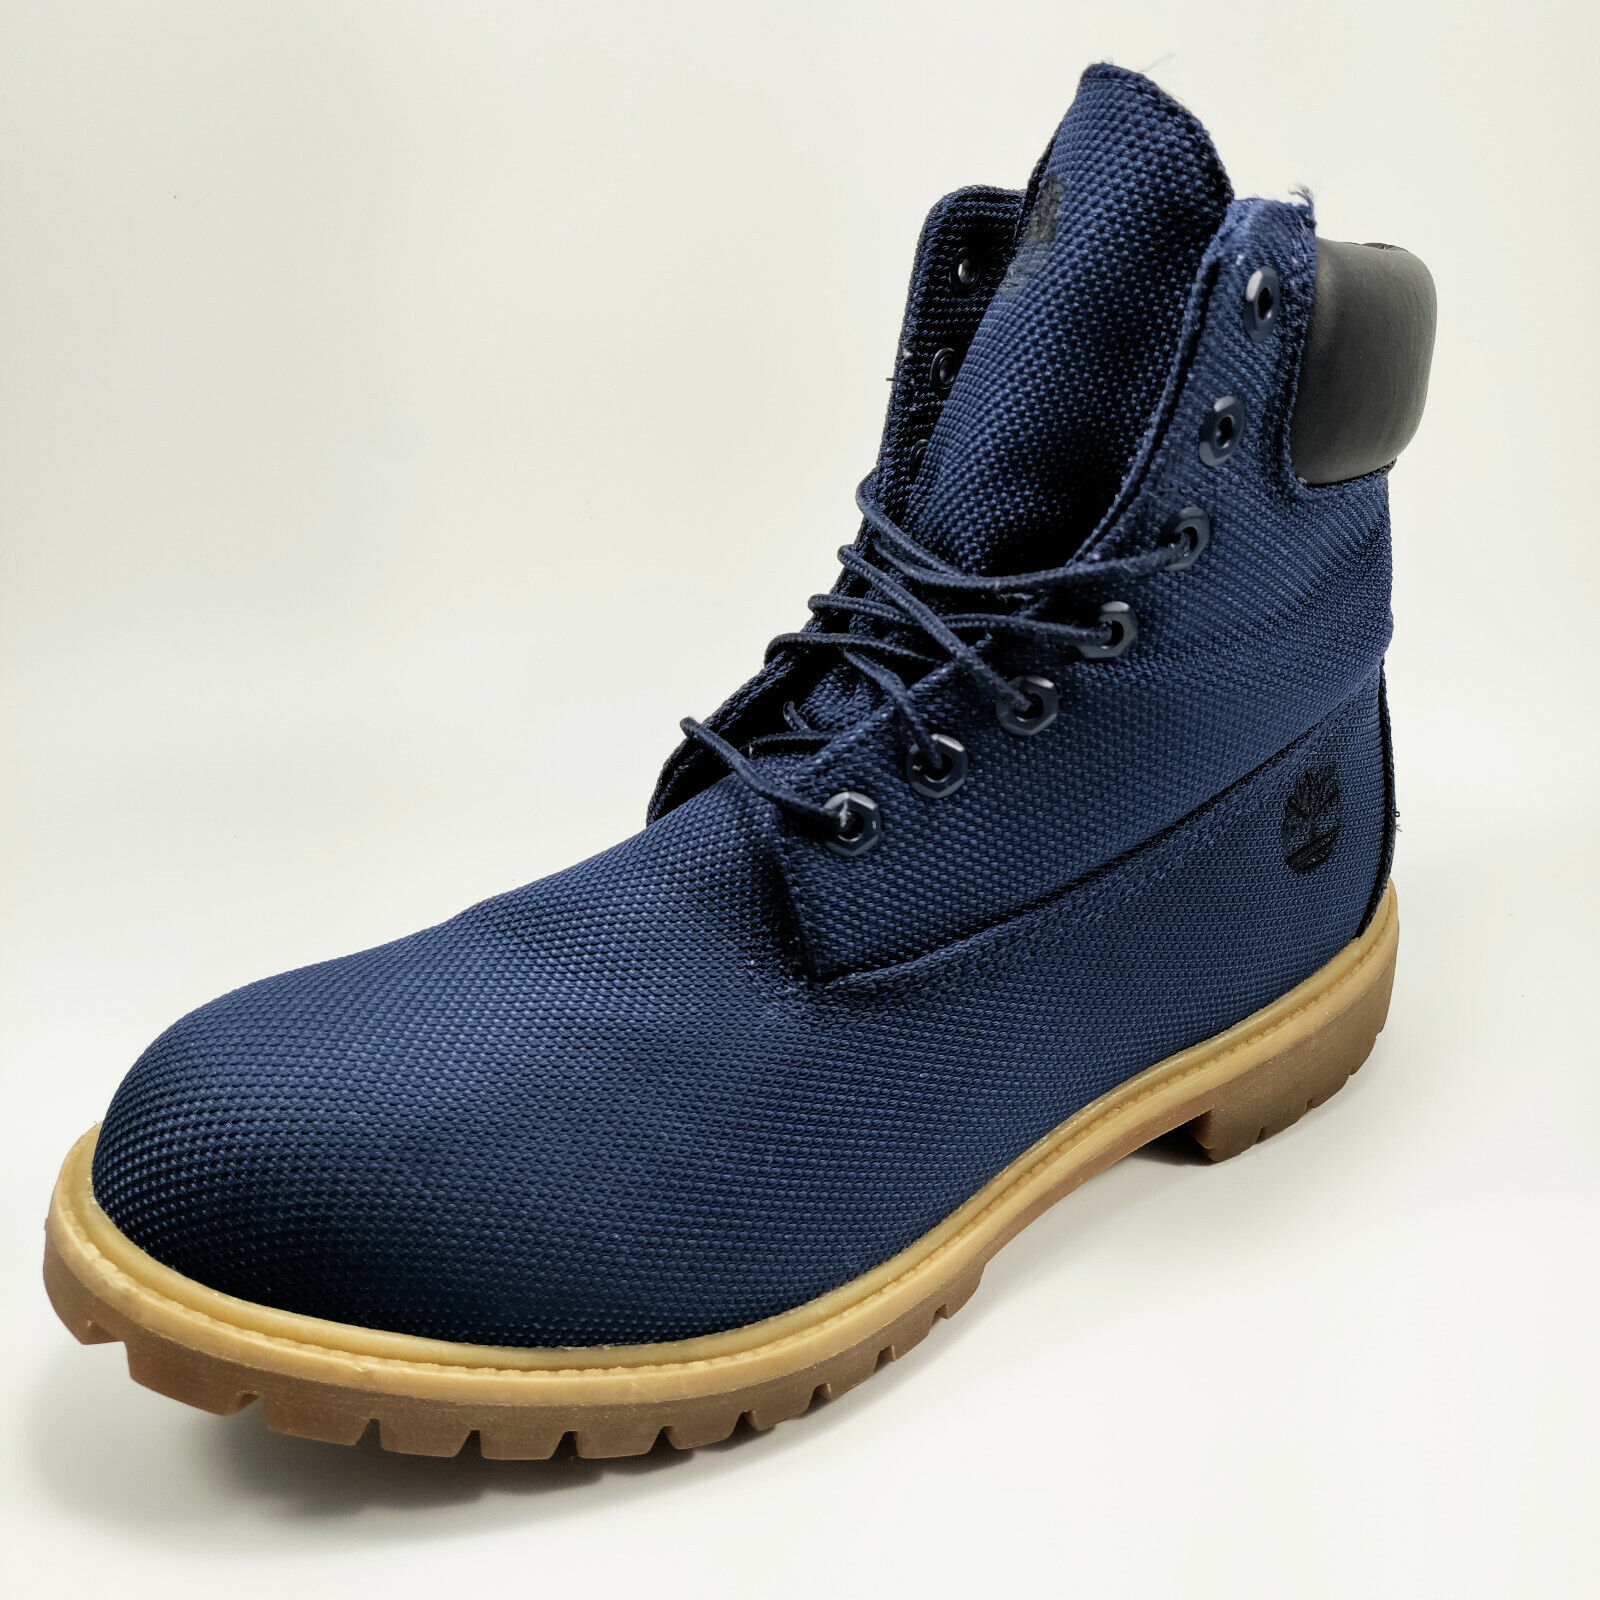 voorwoord Allemaal Min Timberland 6 Inch Premium Waterproof Boots Men's Navy Blue / Tan A1M285140  SZ 12 | eBay